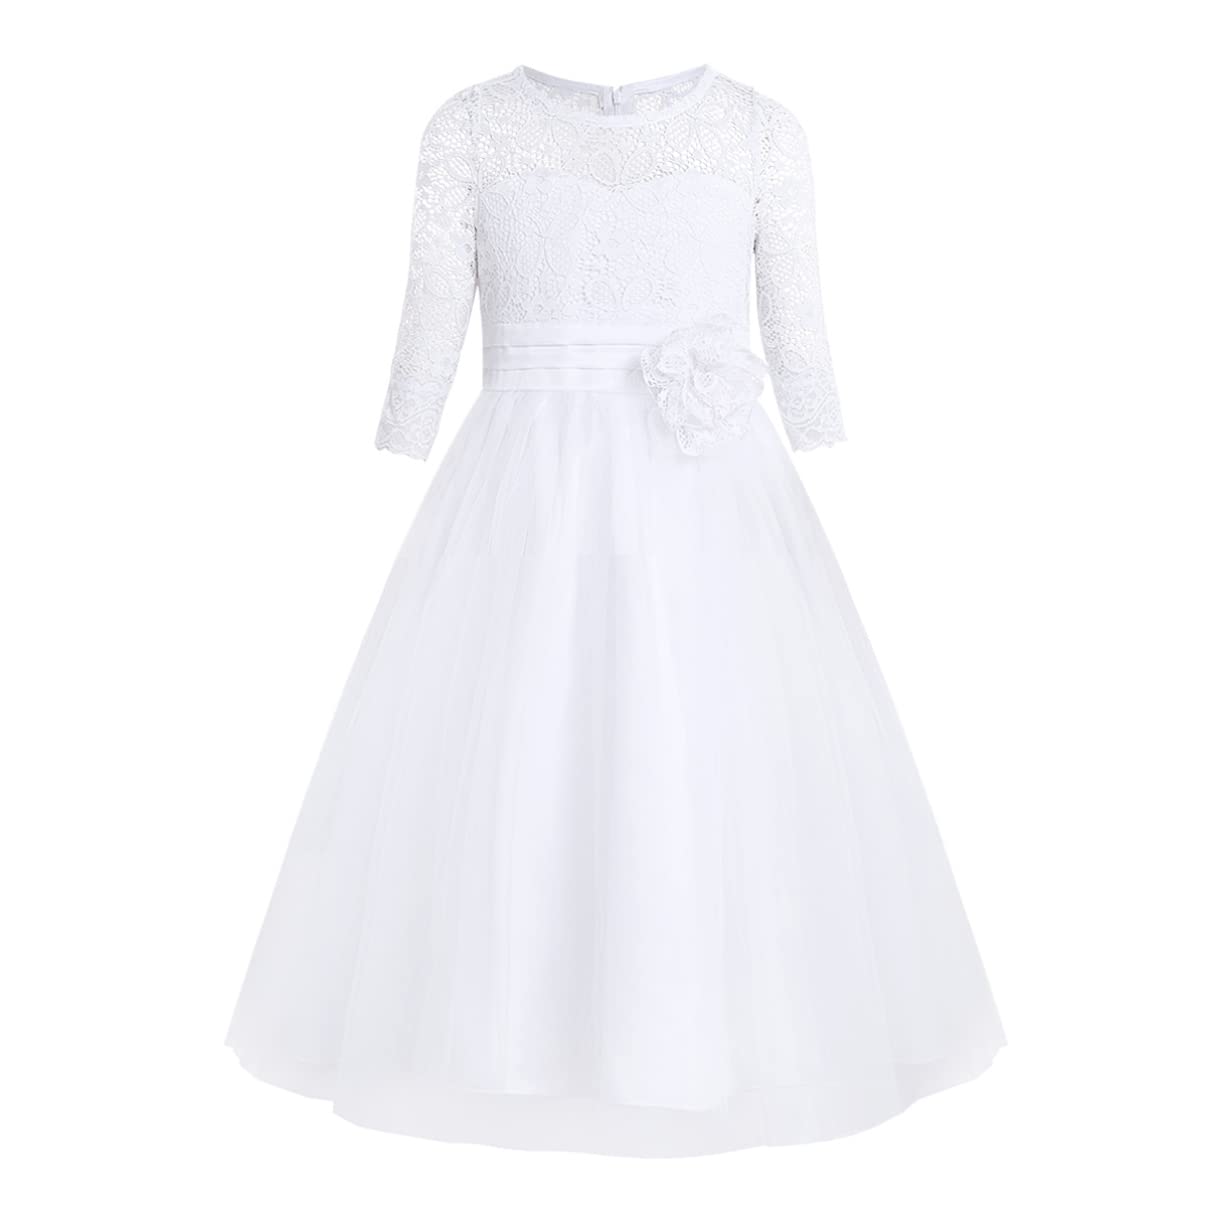 iixpin Mädchen Prinzessin Kleid Halb-Arm Weiß Kommunionkleid Party Kleid Spitze Festlich Festzug Brautjungfernkleid 104-164 Weiß 116